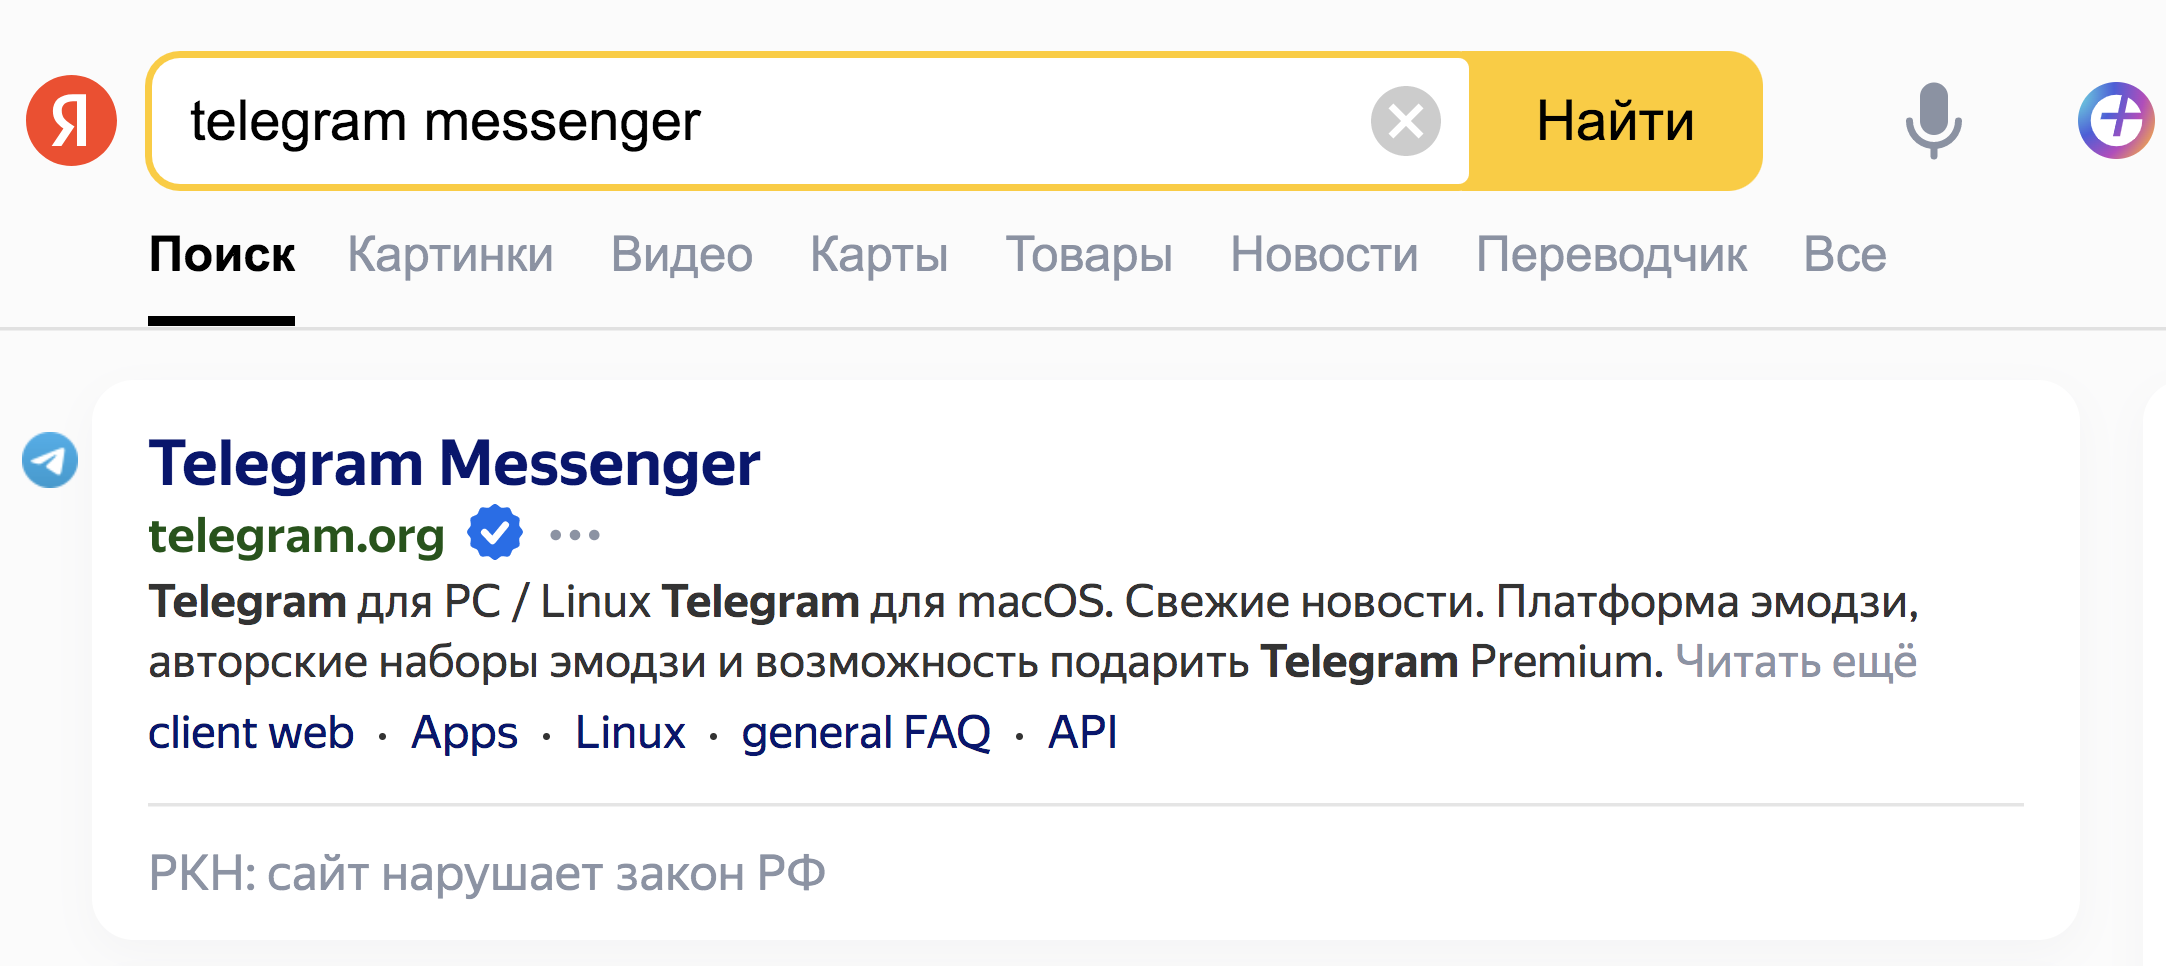 Российские поисковики начали помечать TikTok, Telegram и другие сервисы как нарушителей закона          